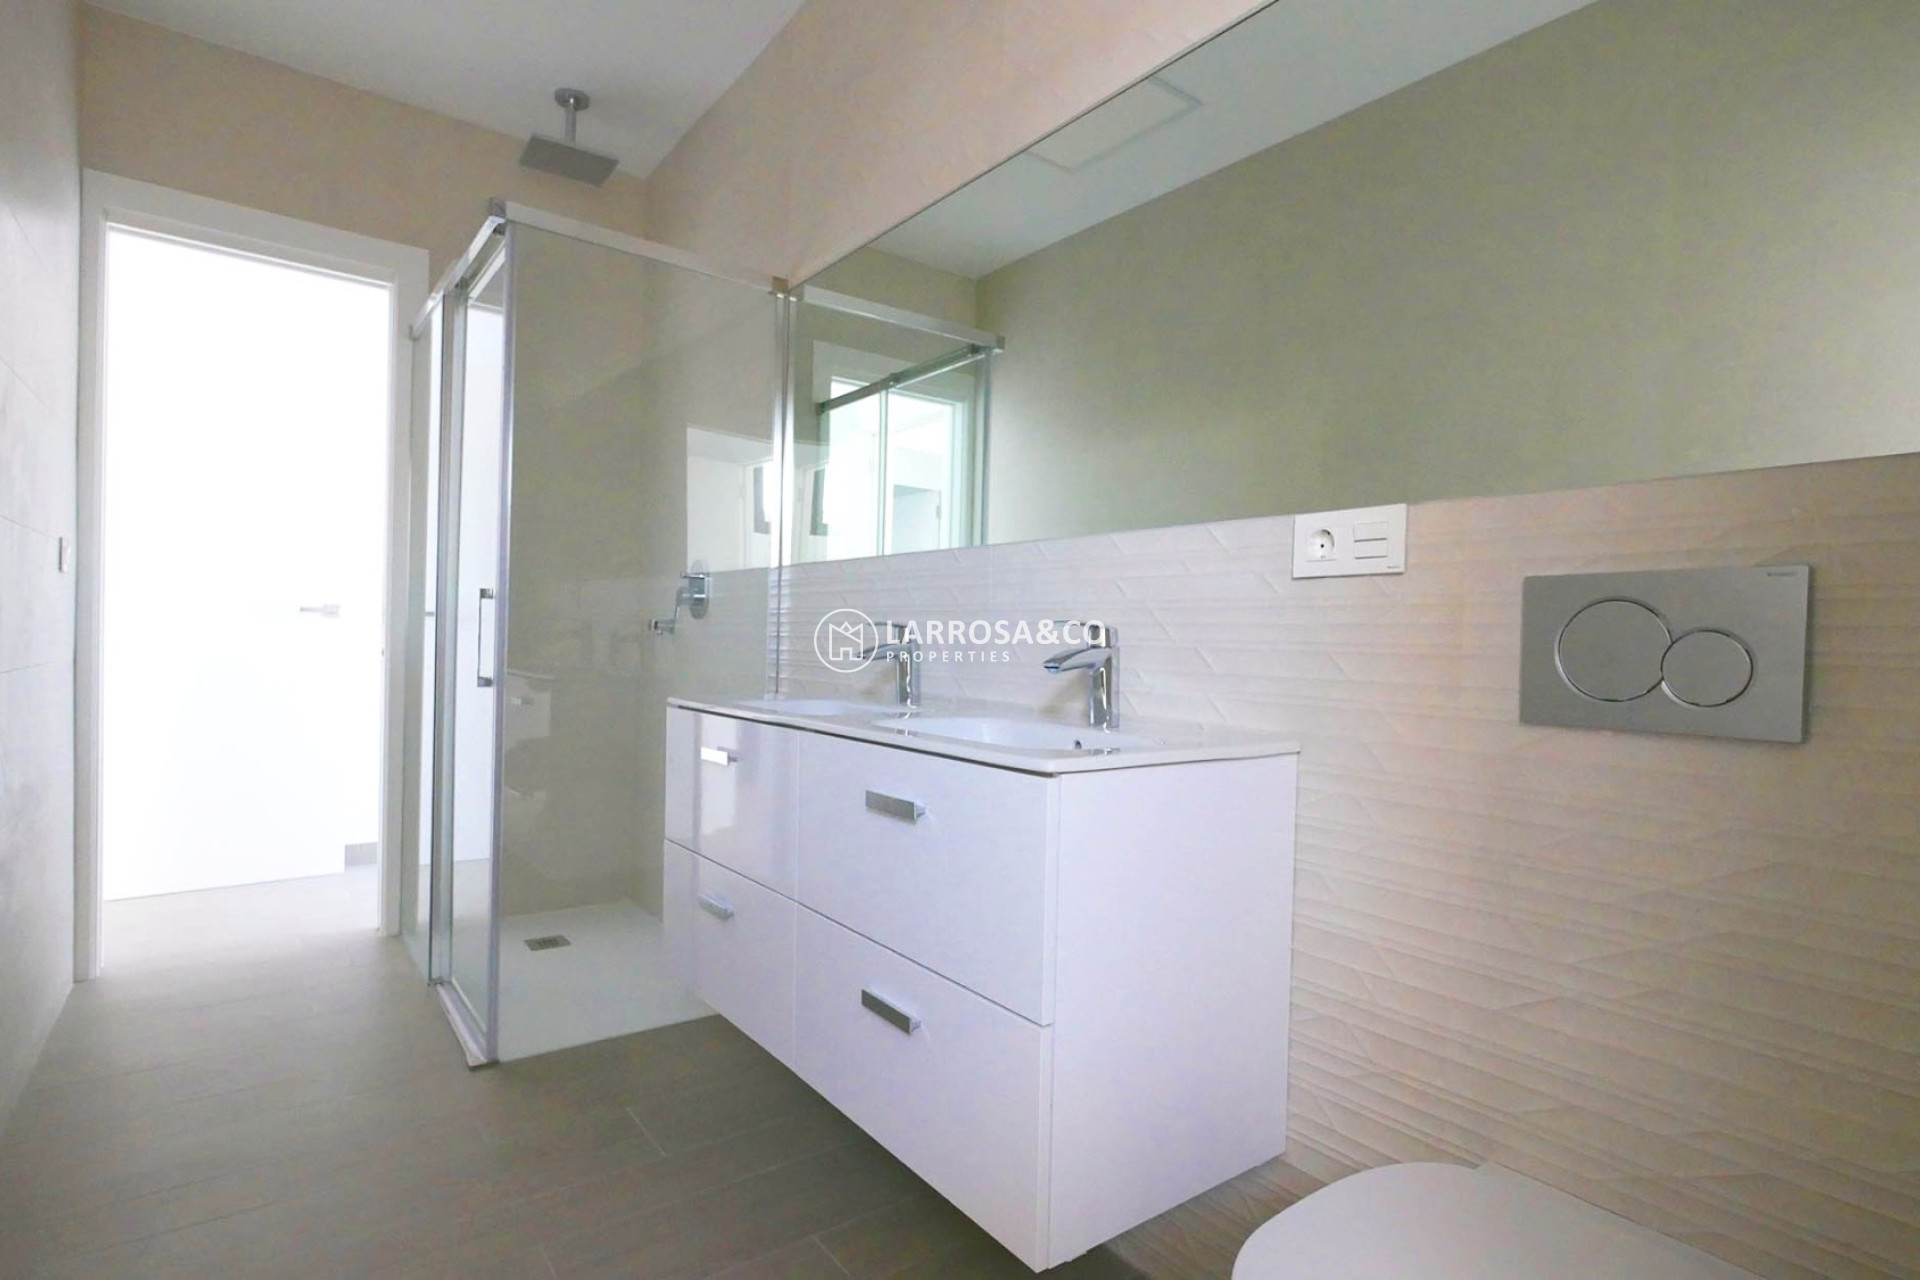 new-built-villa-la-marina-bathroom-on2089